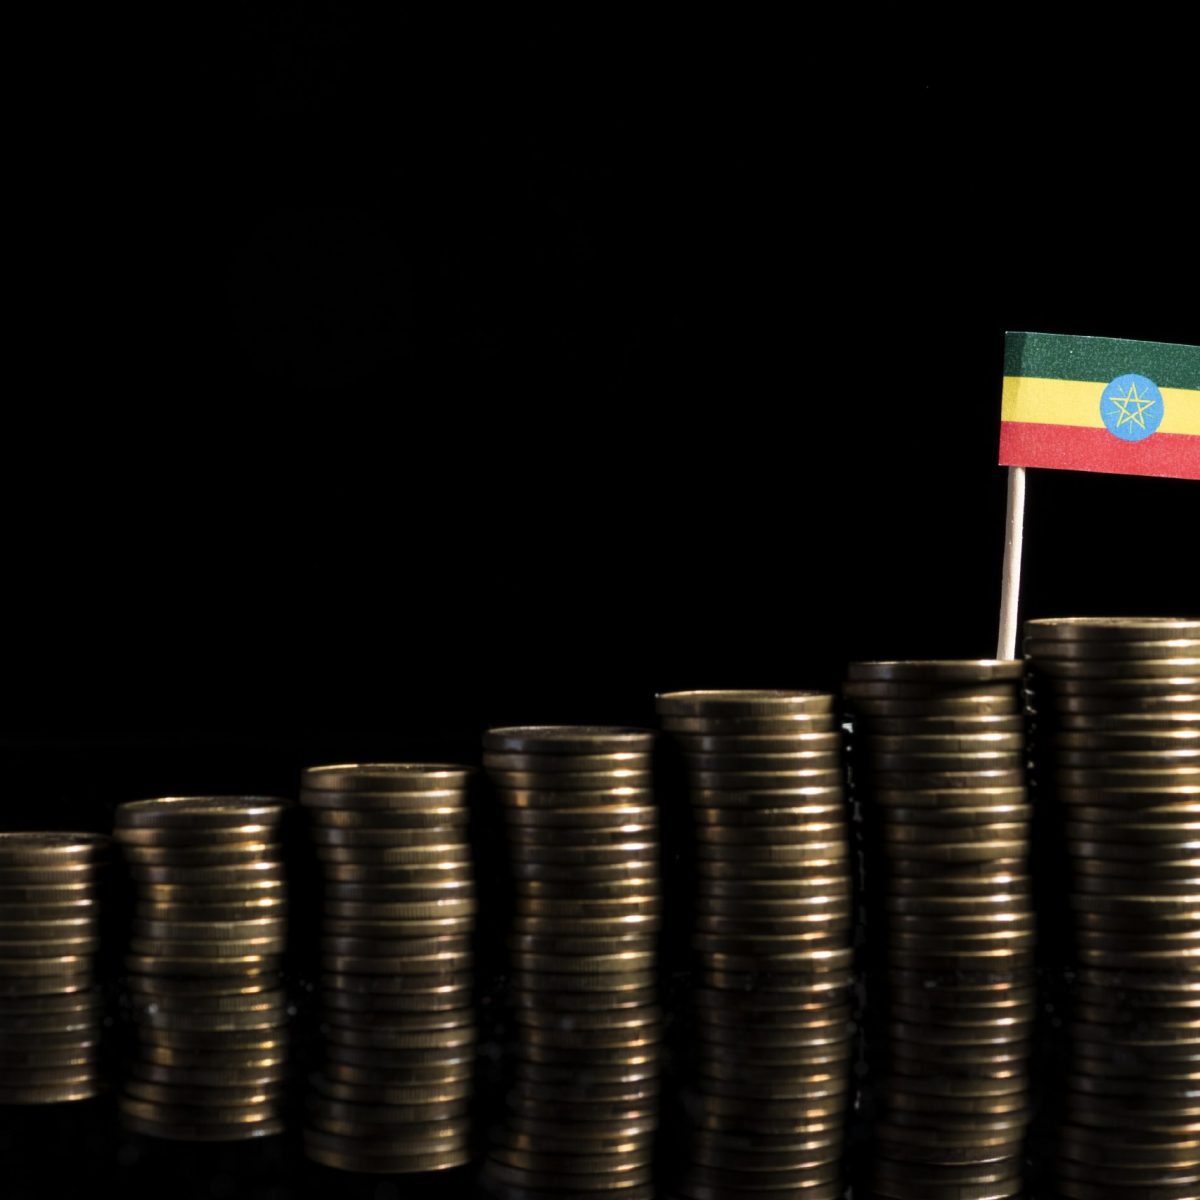 Pension Fund Investment Ethiopia